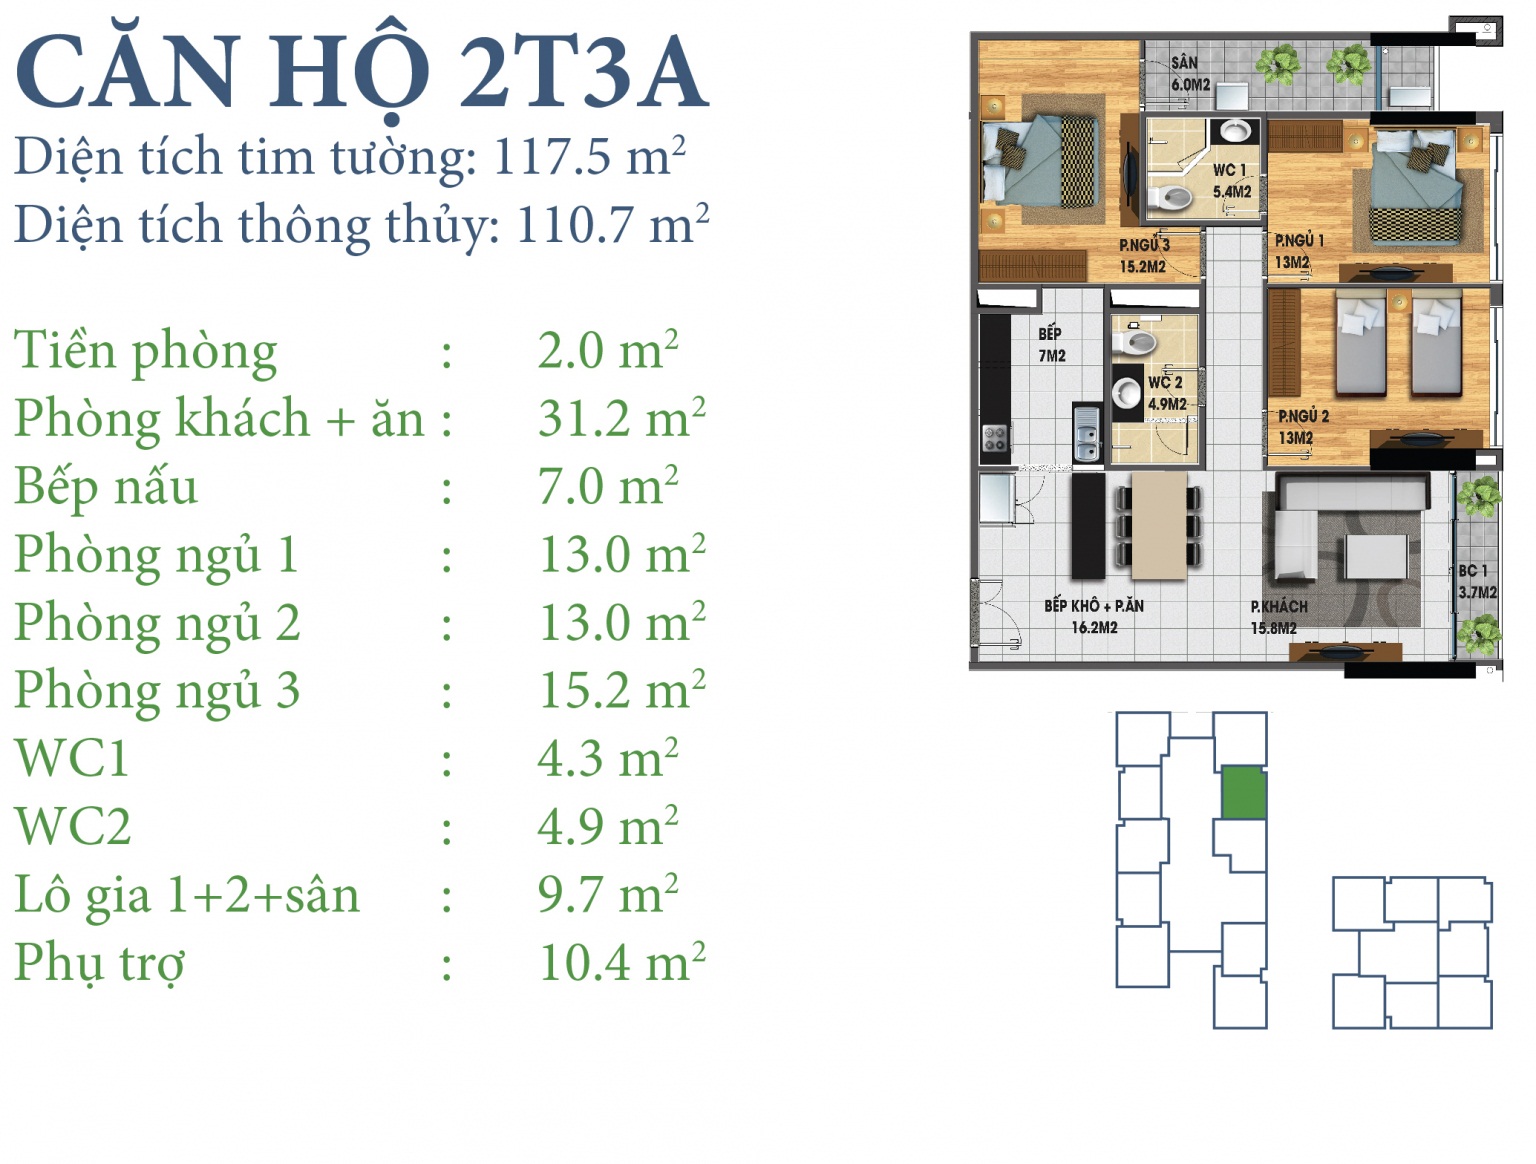 Mặt bằng căn hộ 2T3A chung cư N03T3-T4 Ngoại Giao Đoàn